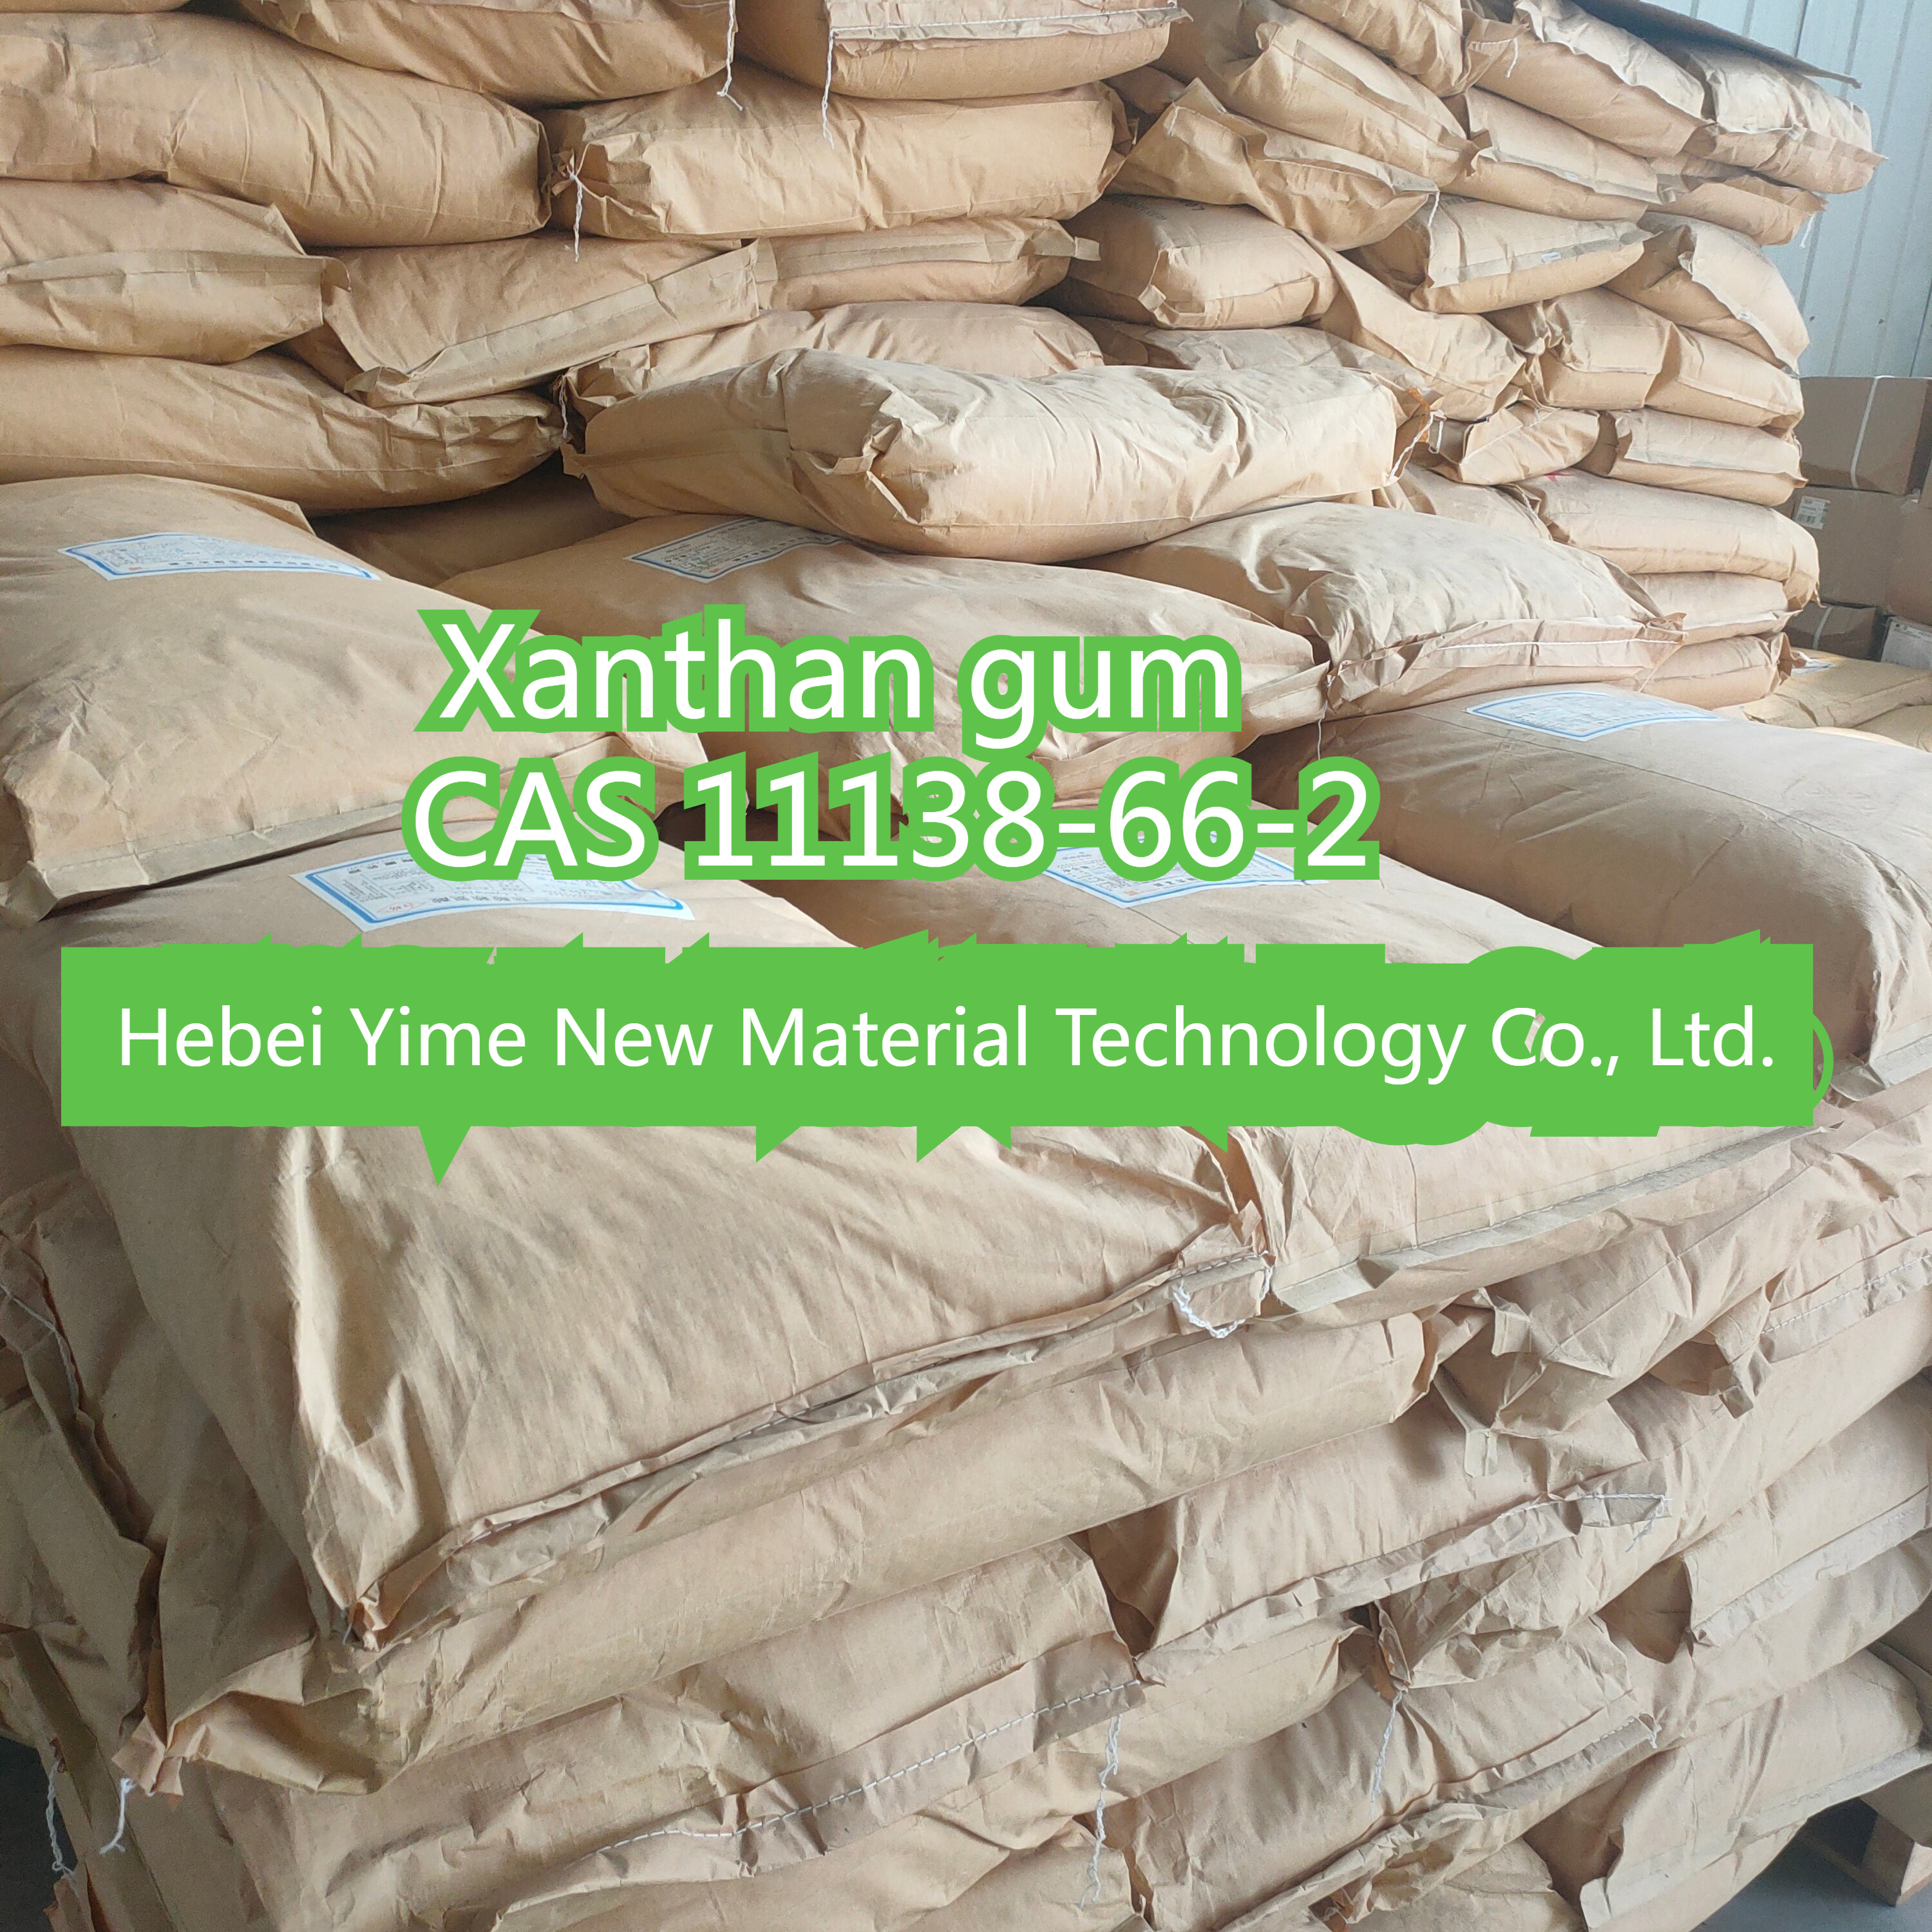 Nguyên liệu mỹ phẩm Xanthan Gum trong suốt Xanthan Gum CAS 11138-66-2